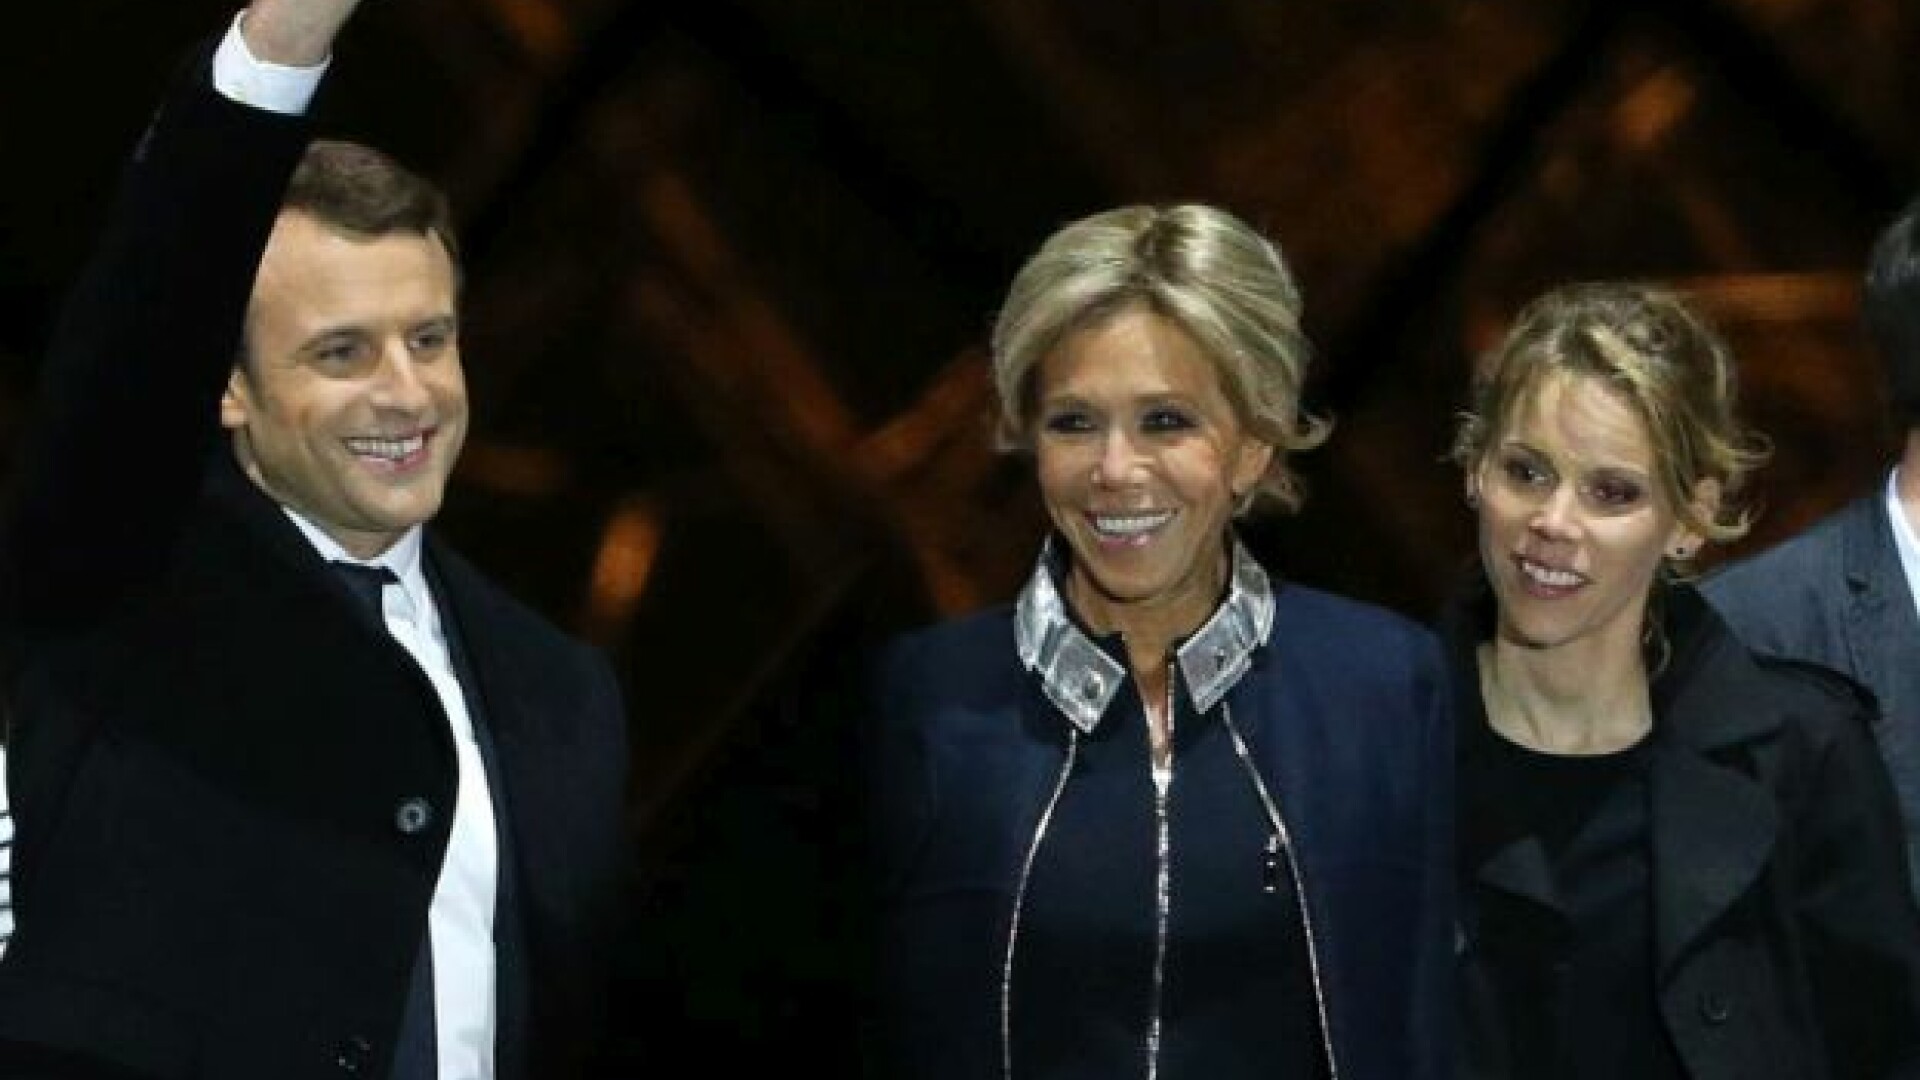 Fiica vitrega a lui Macron este comaparata cu Ivanka Trump